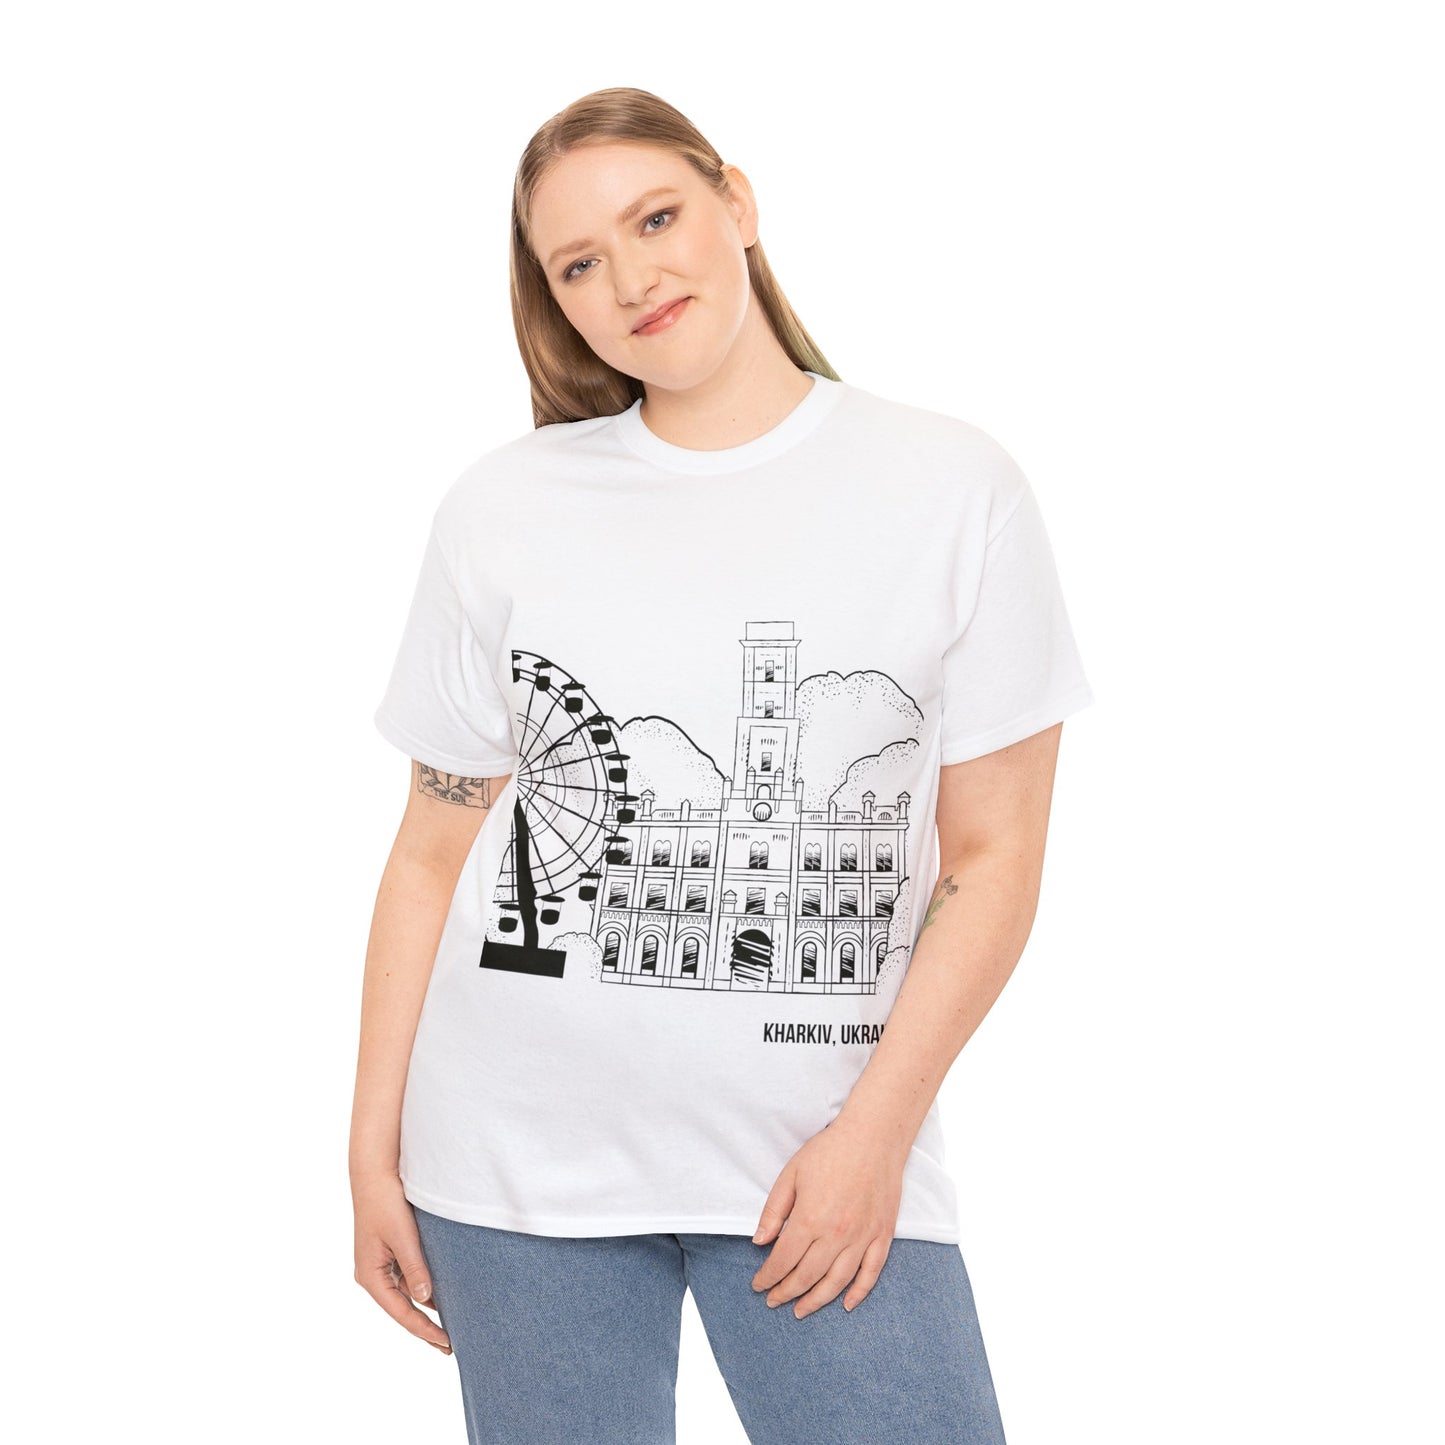 The Kharkiv T-Shirt